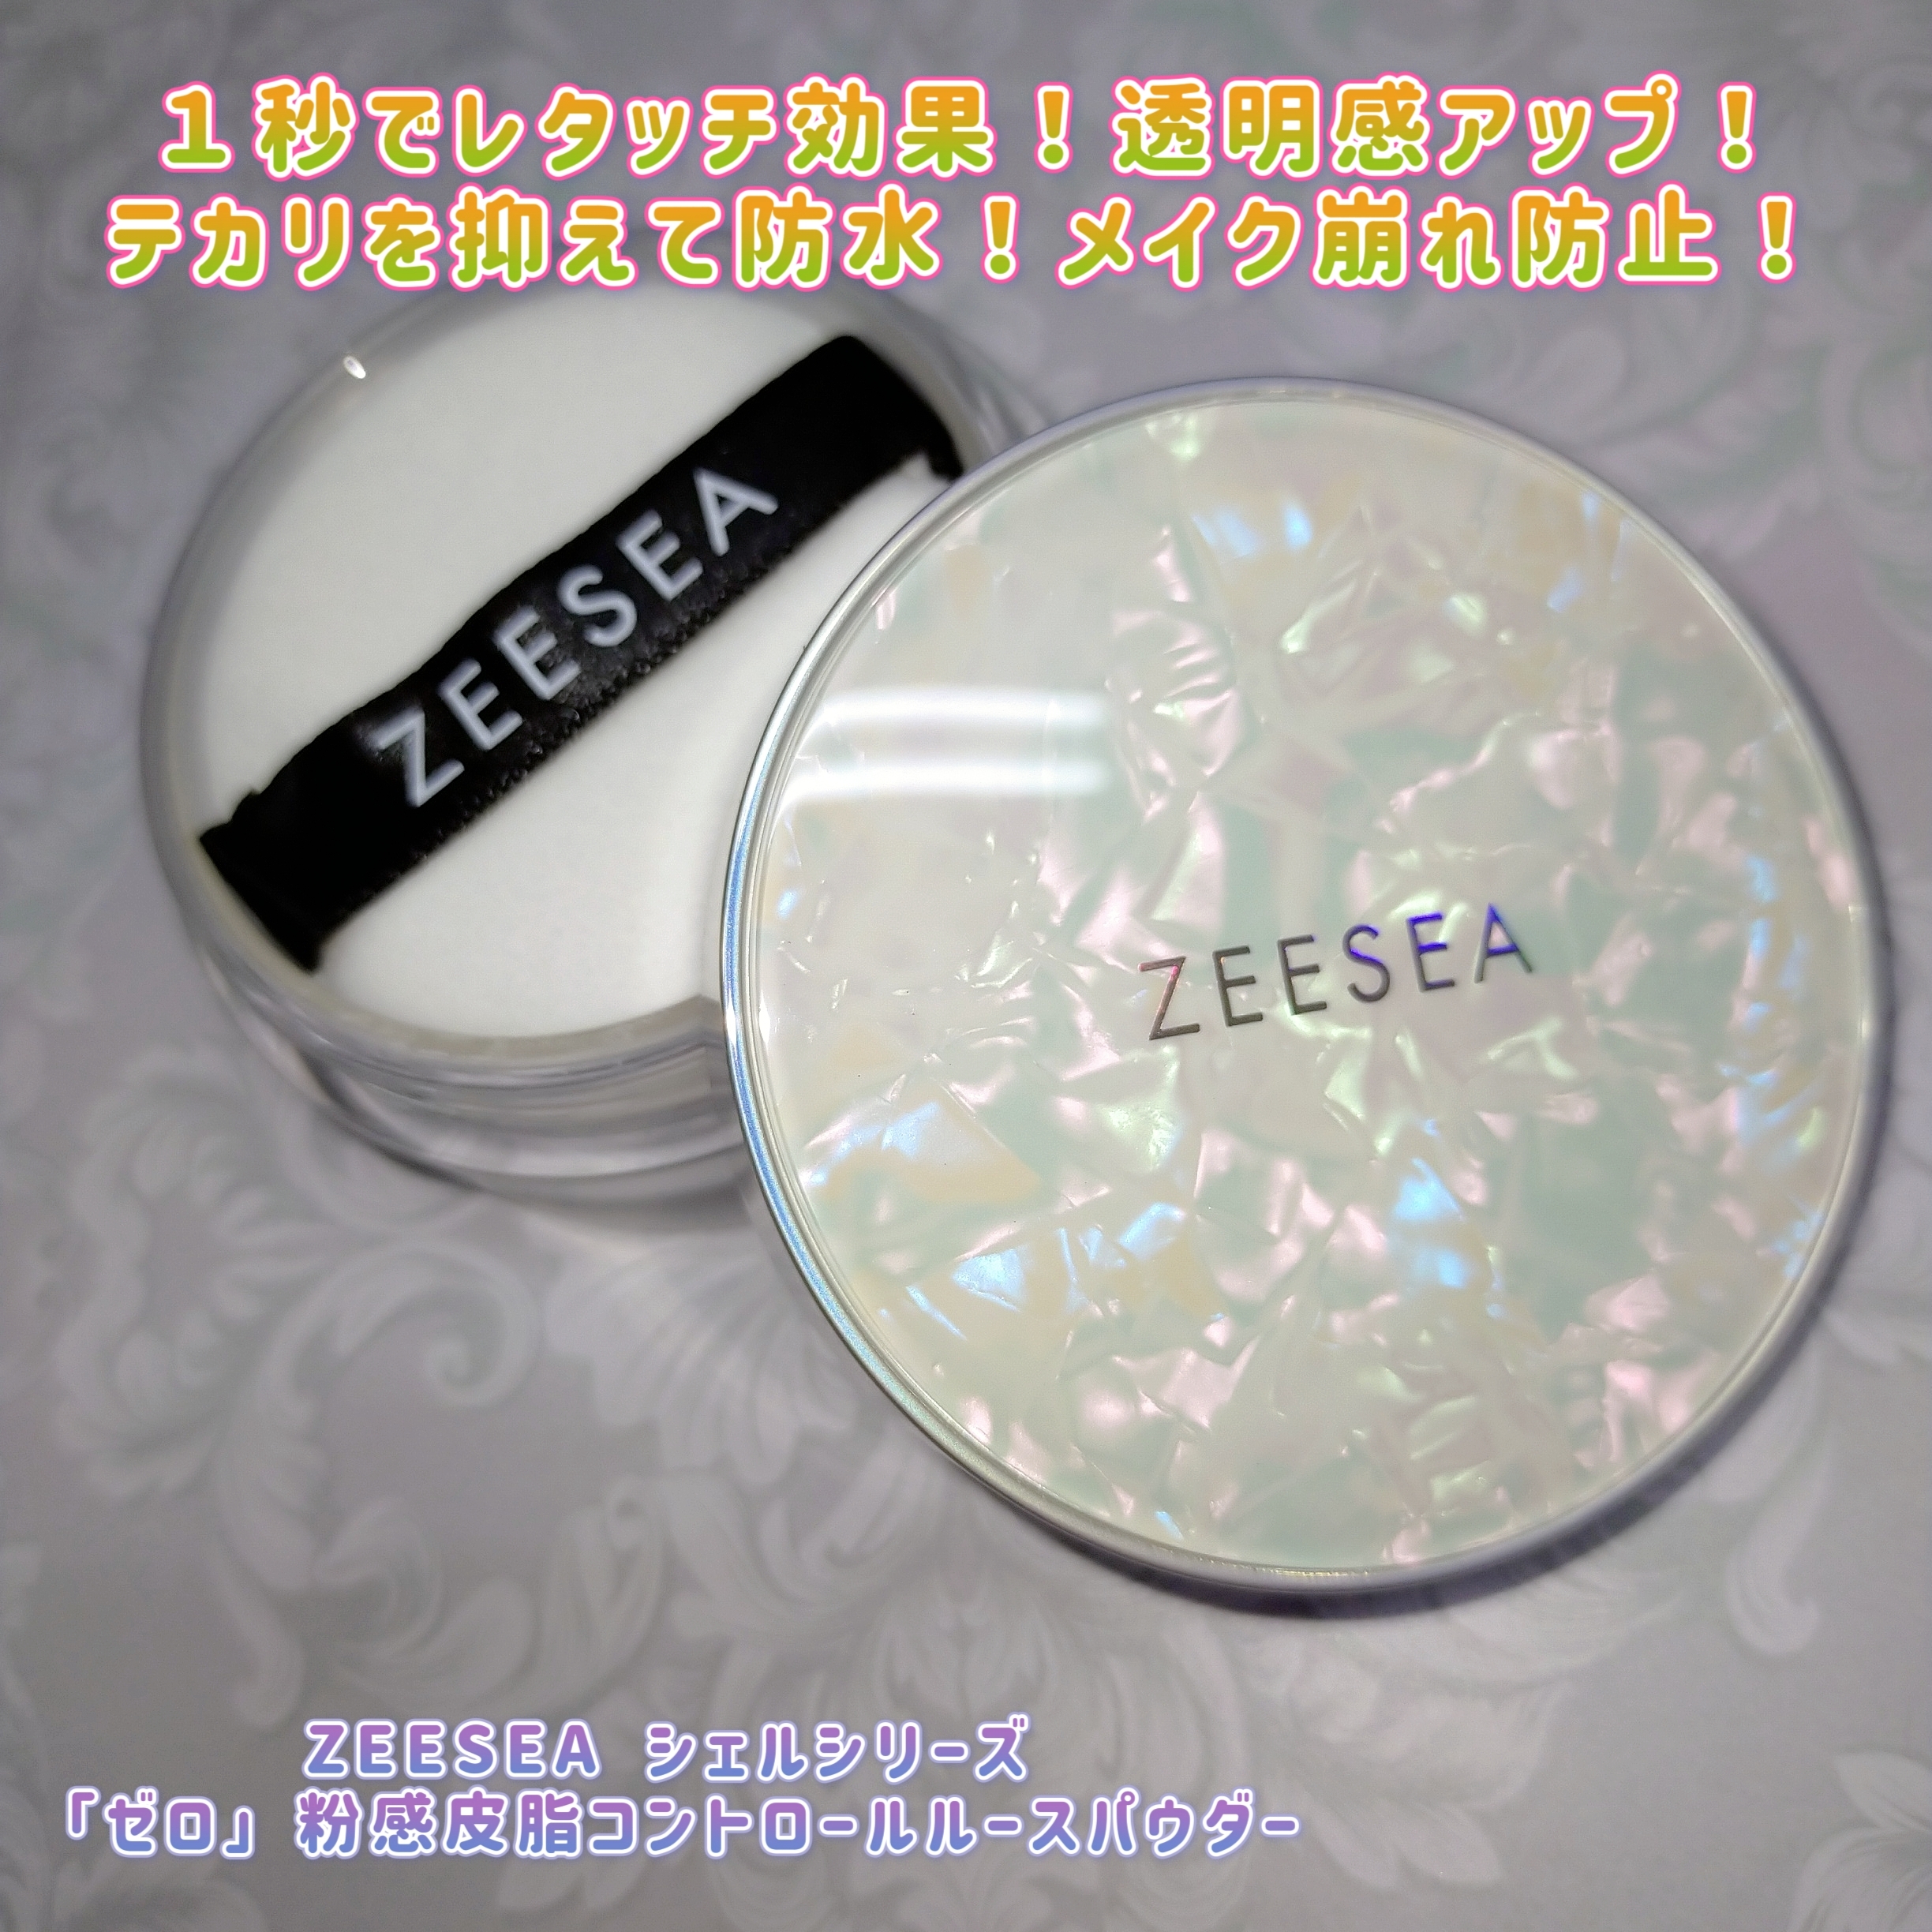 ZEESEA(ズーシー) フェザーライトルースパウダーの良い点・メリットに関するみこさんの口コミ画像1